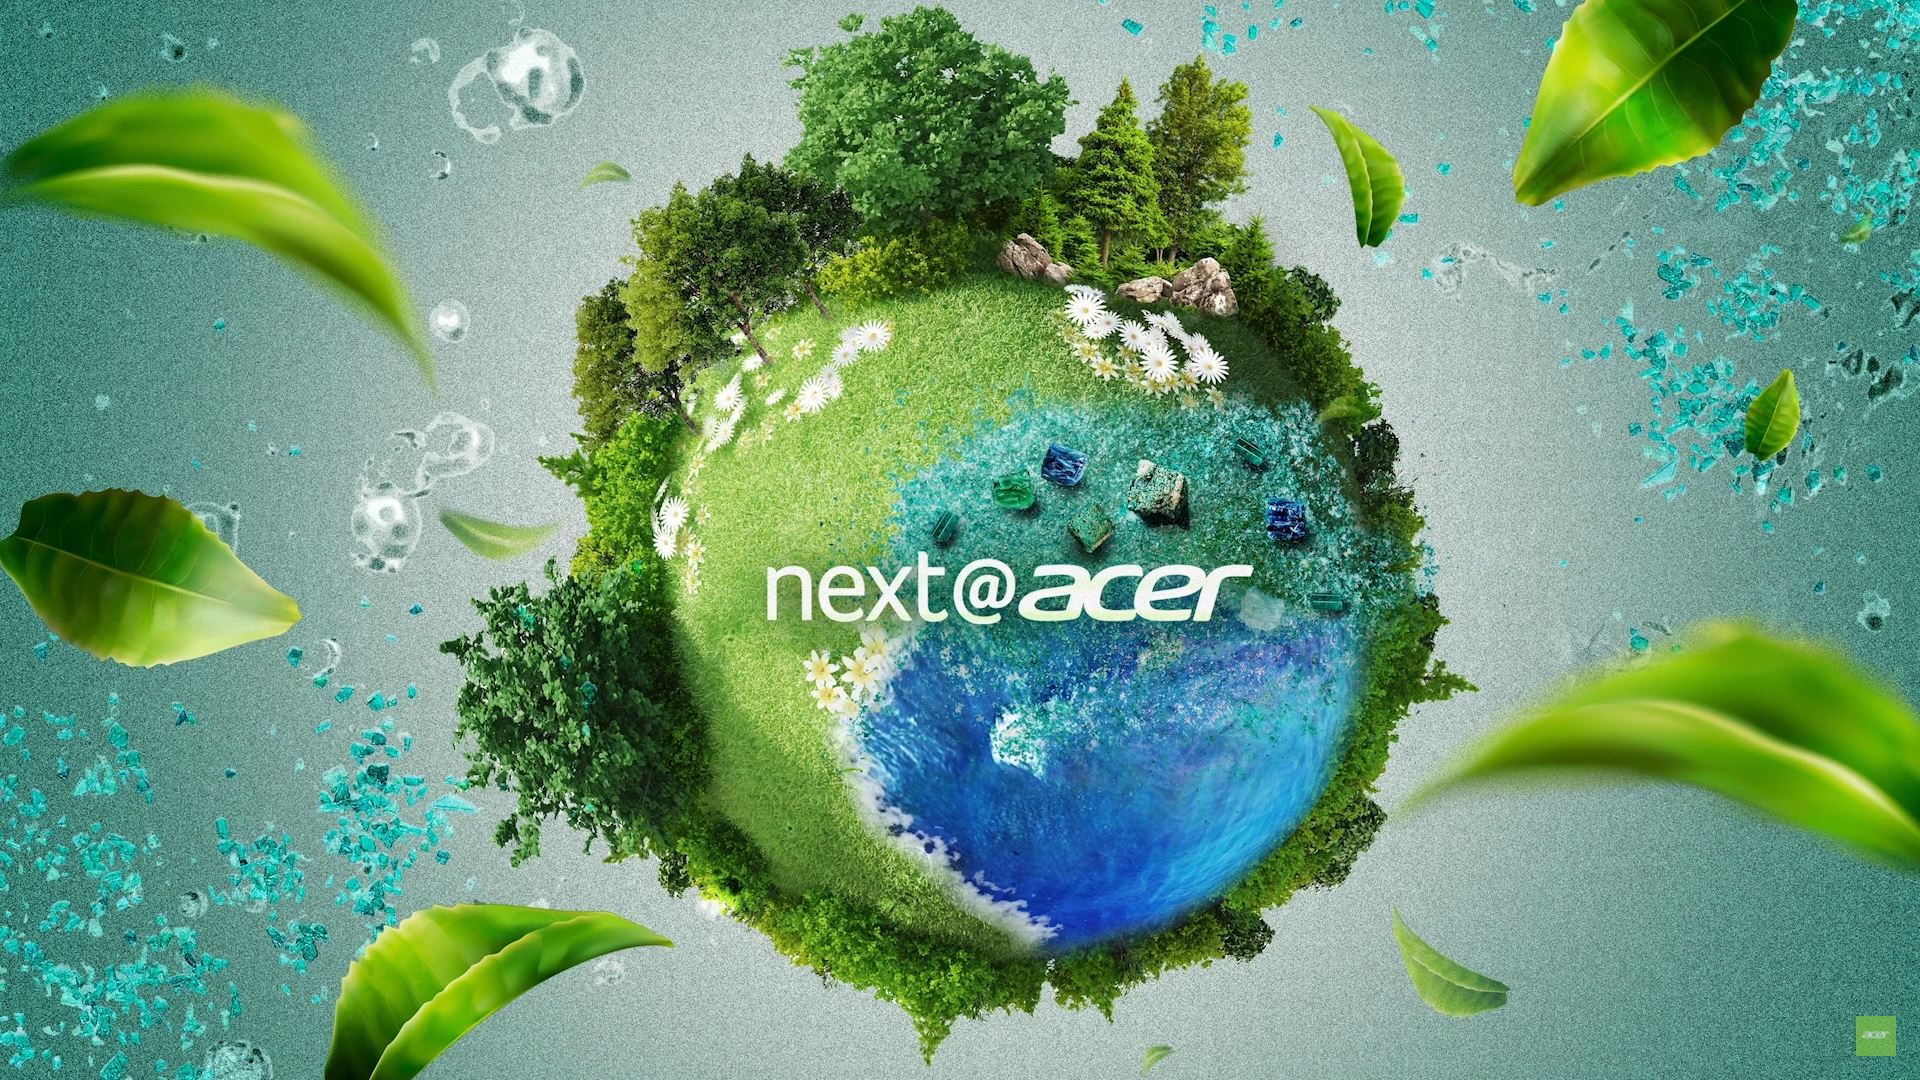 Next@Acer 2022 : Acer met le paquet sur le renouvelable et le recyclage